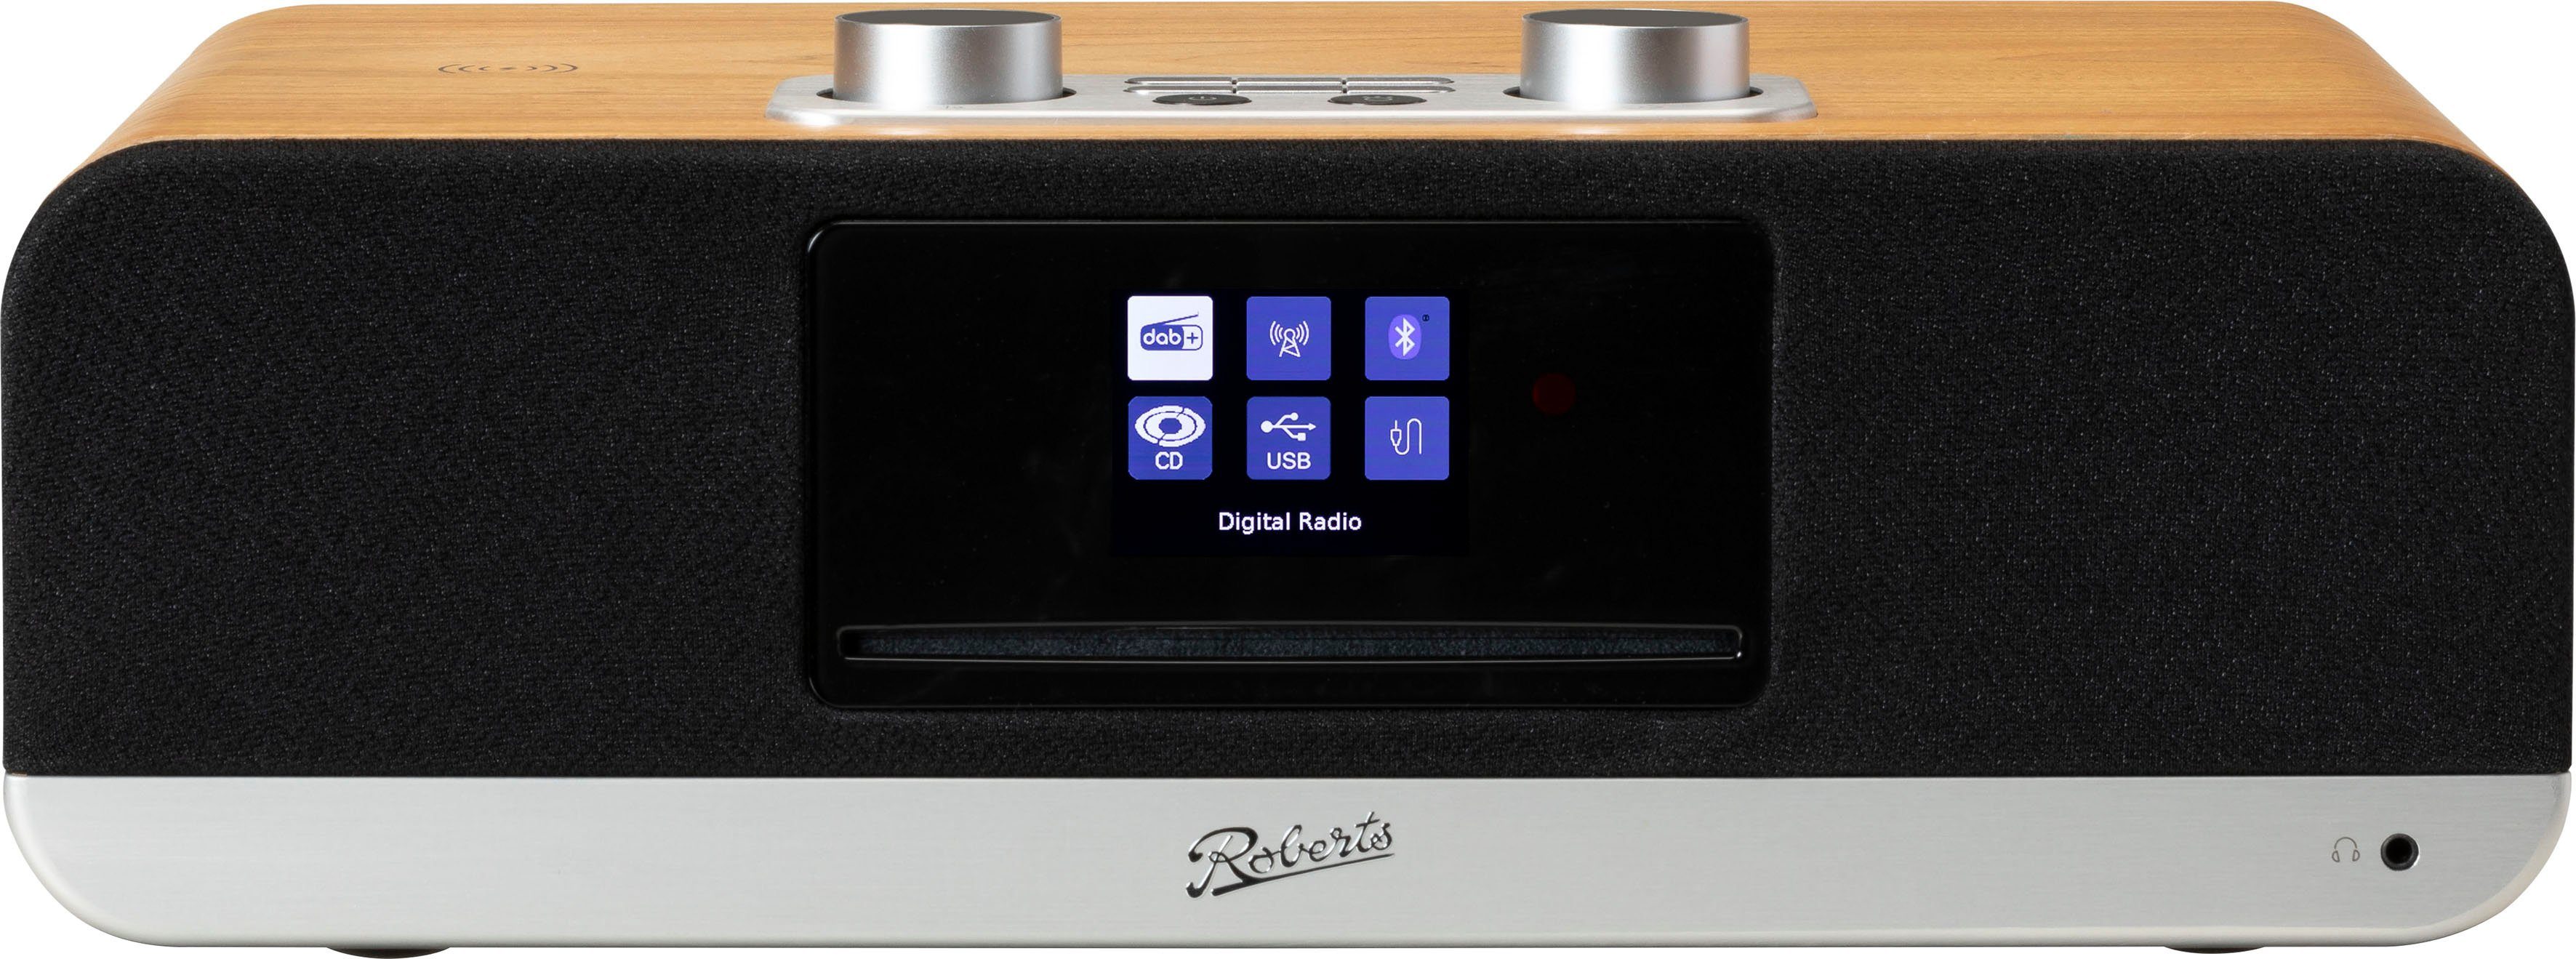 ROBERTS BluTune 300 Digitalradio (DAB), Ein vielseitiges Sound-System für  ein volles, leistungsstarkes